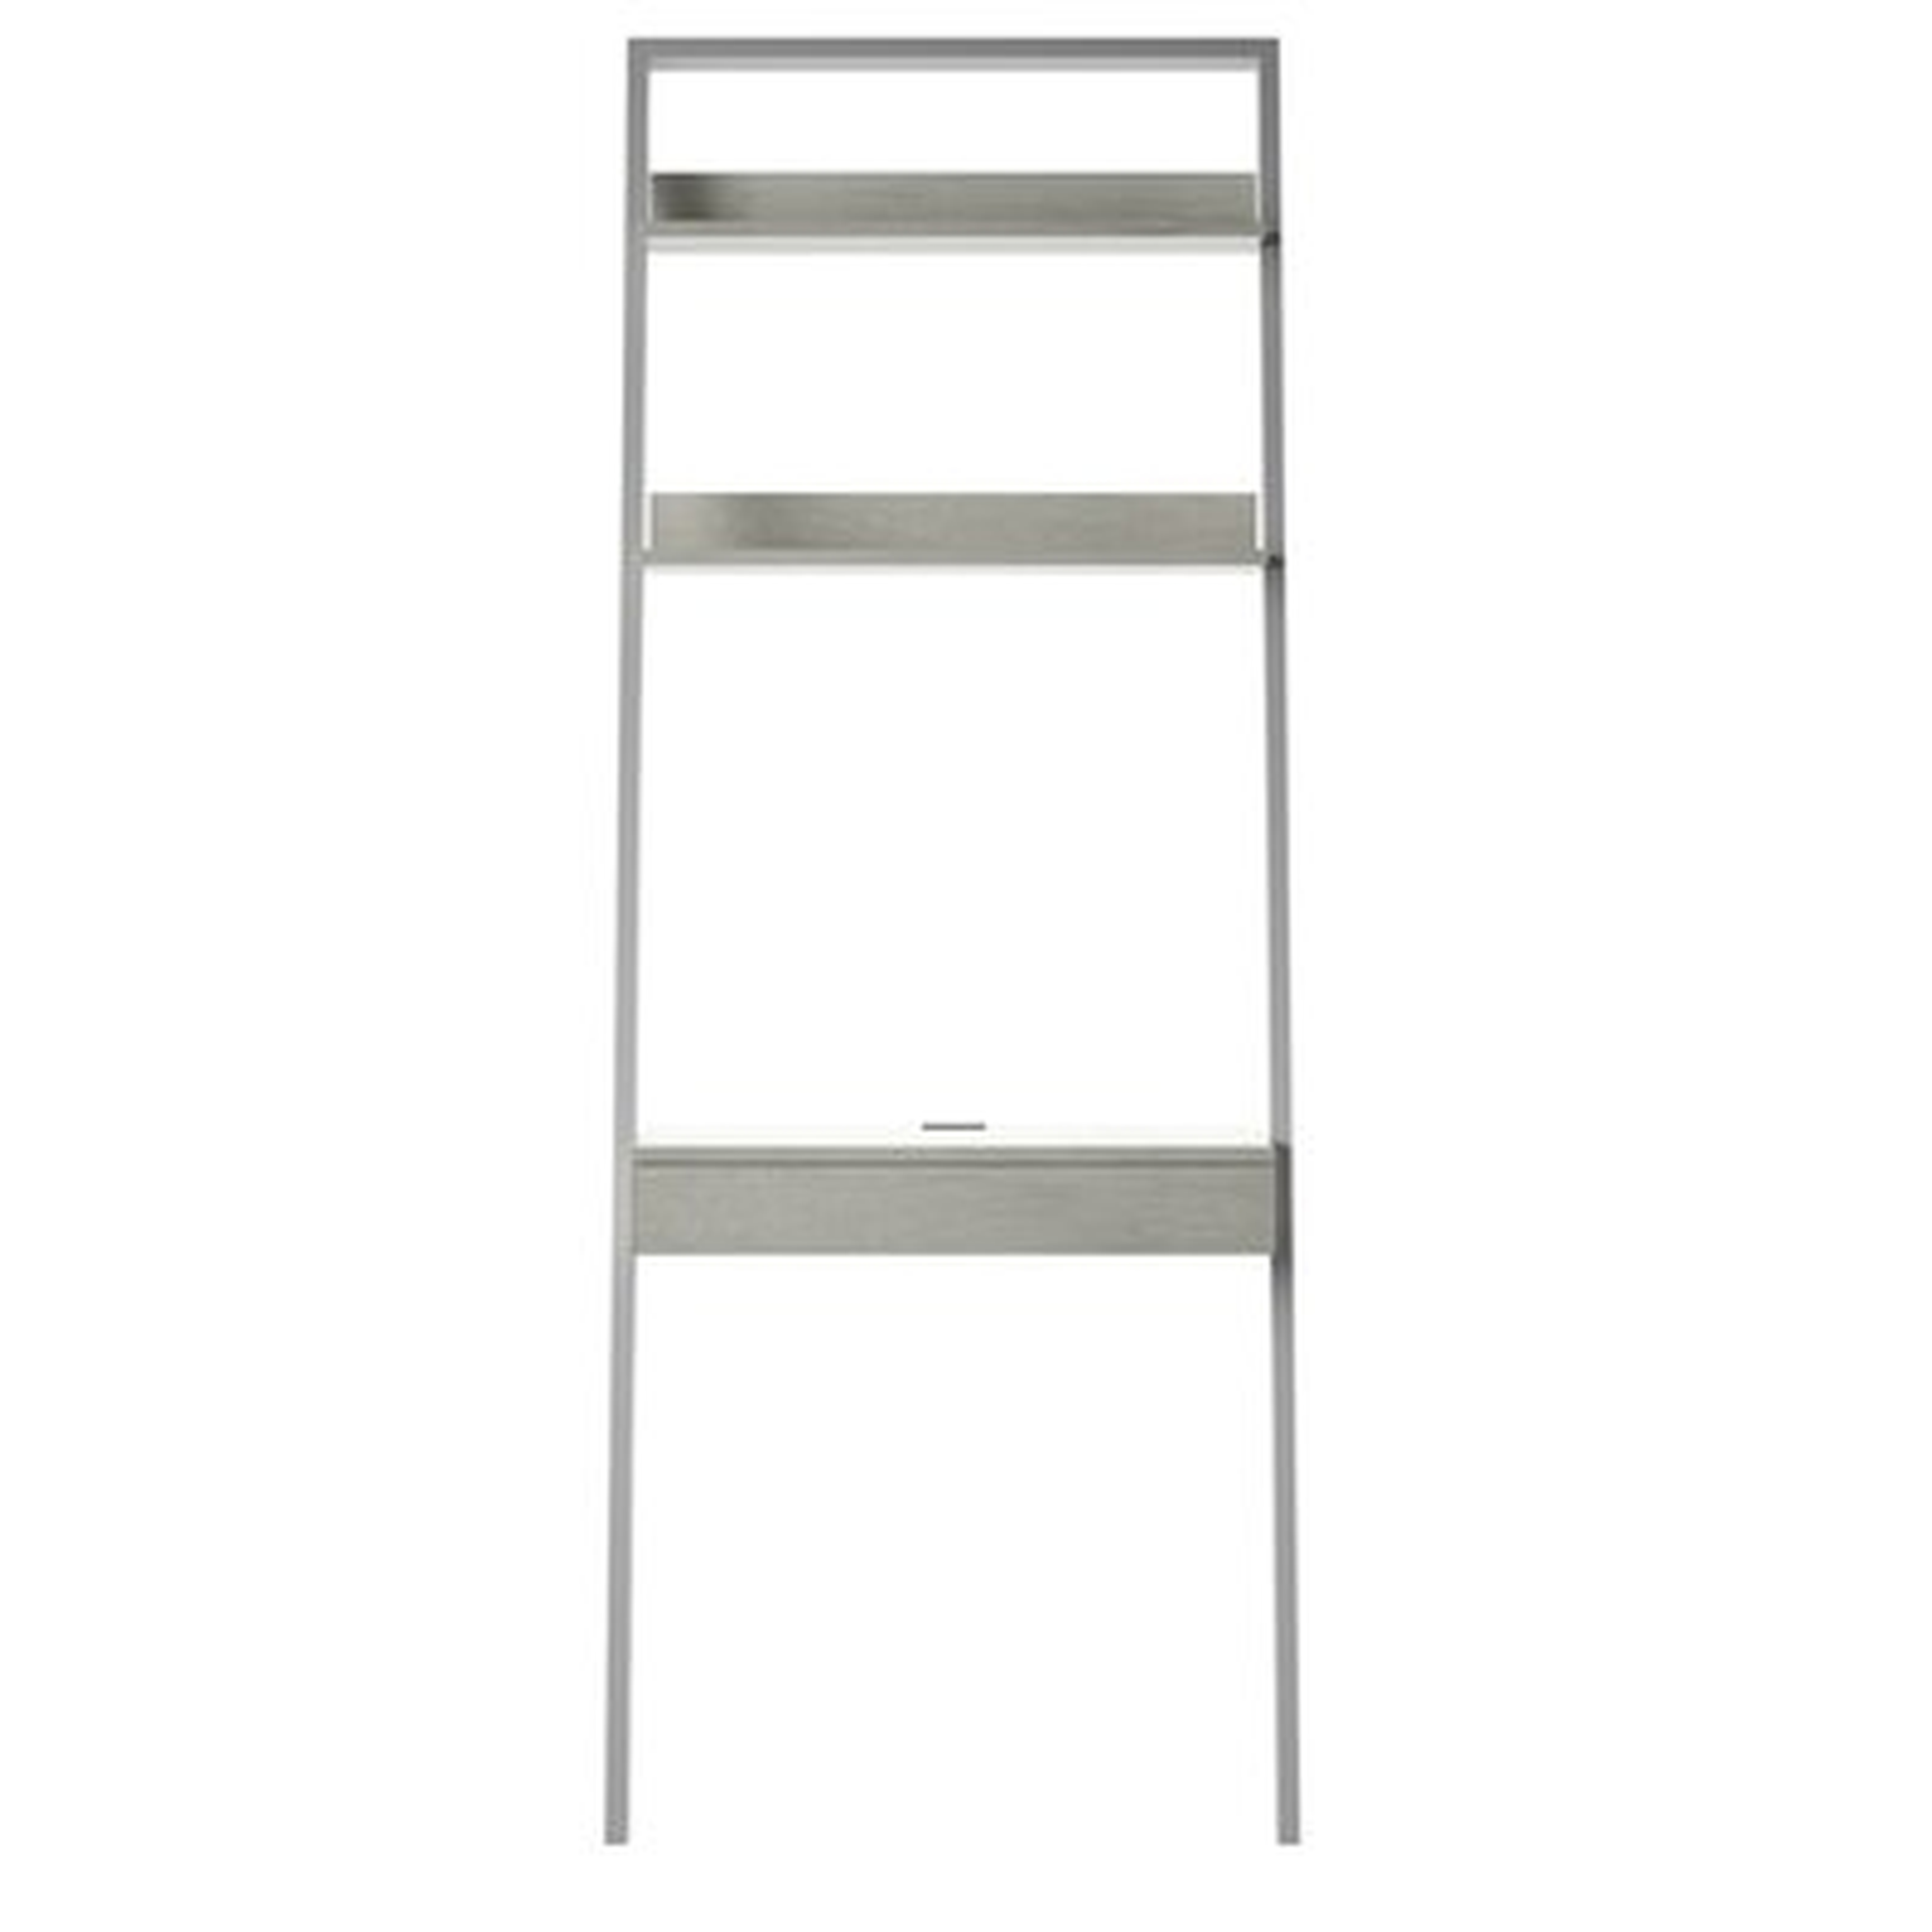 Baghdig Ladder Desk - Wayfair